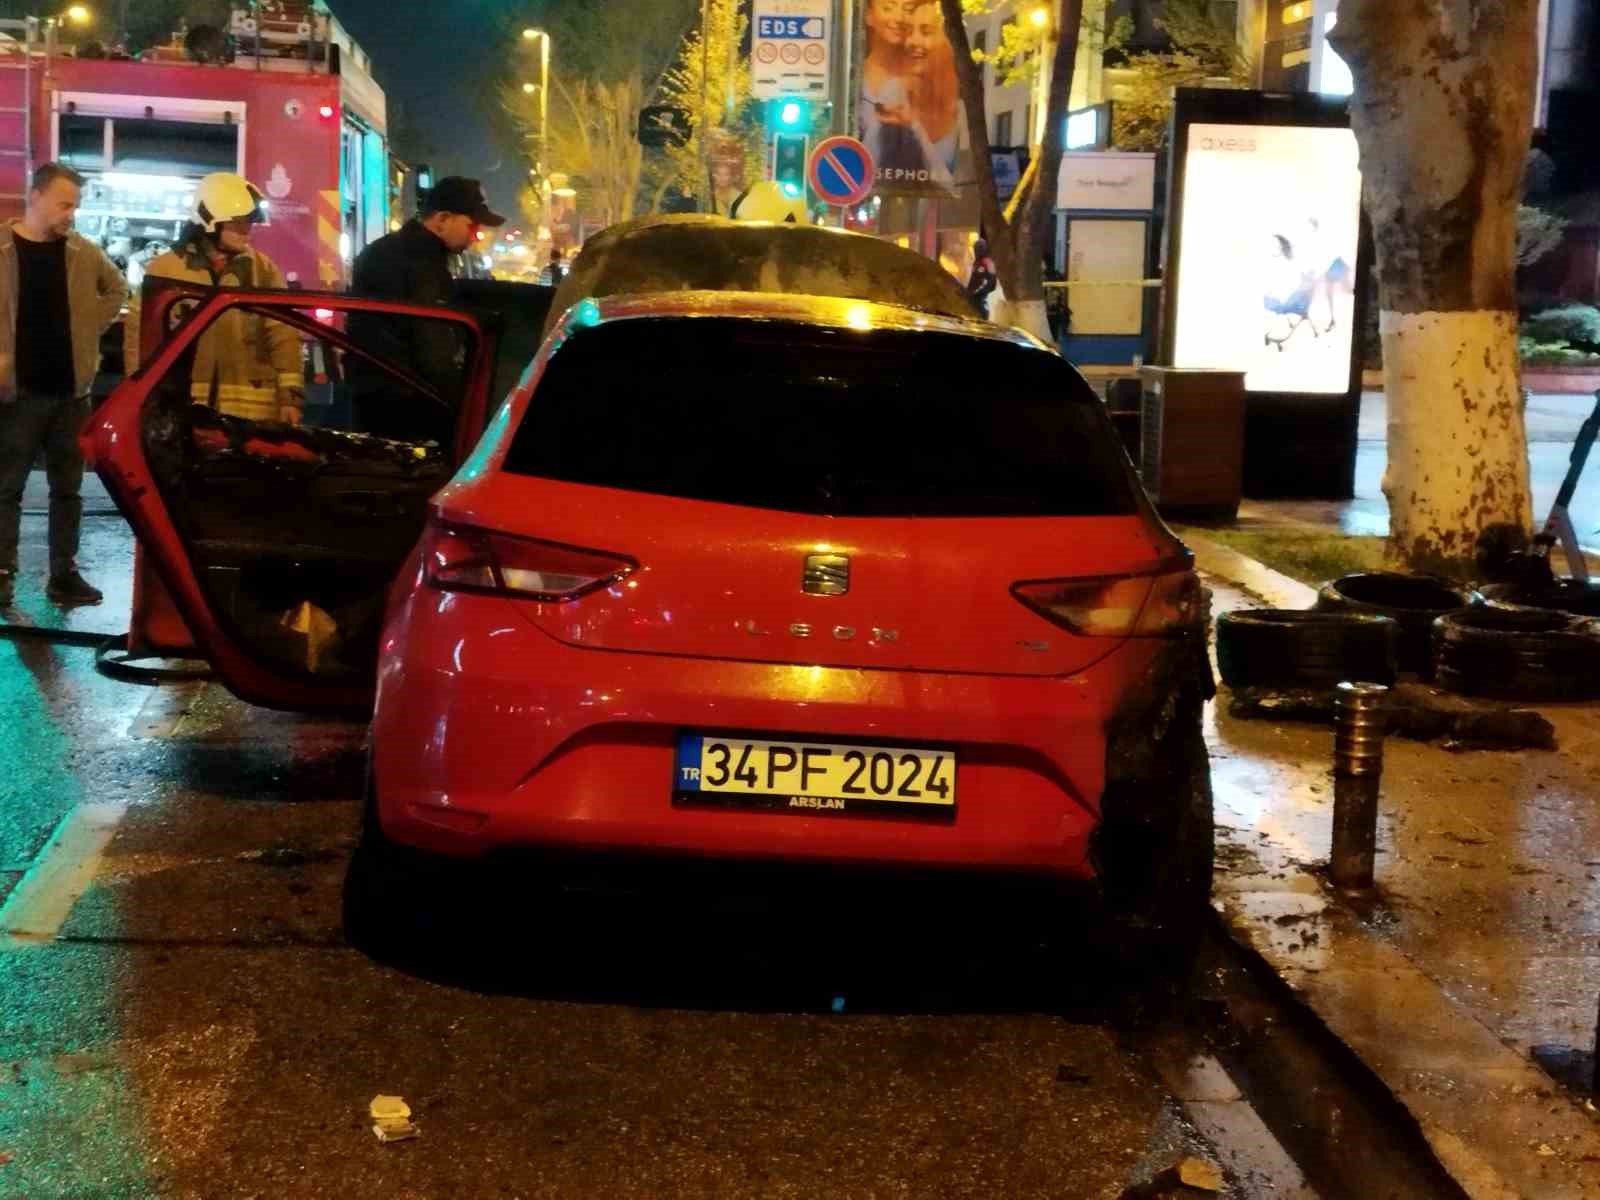 Kadıköy’de park halindeki 2 araç alevlere teslim oldu
